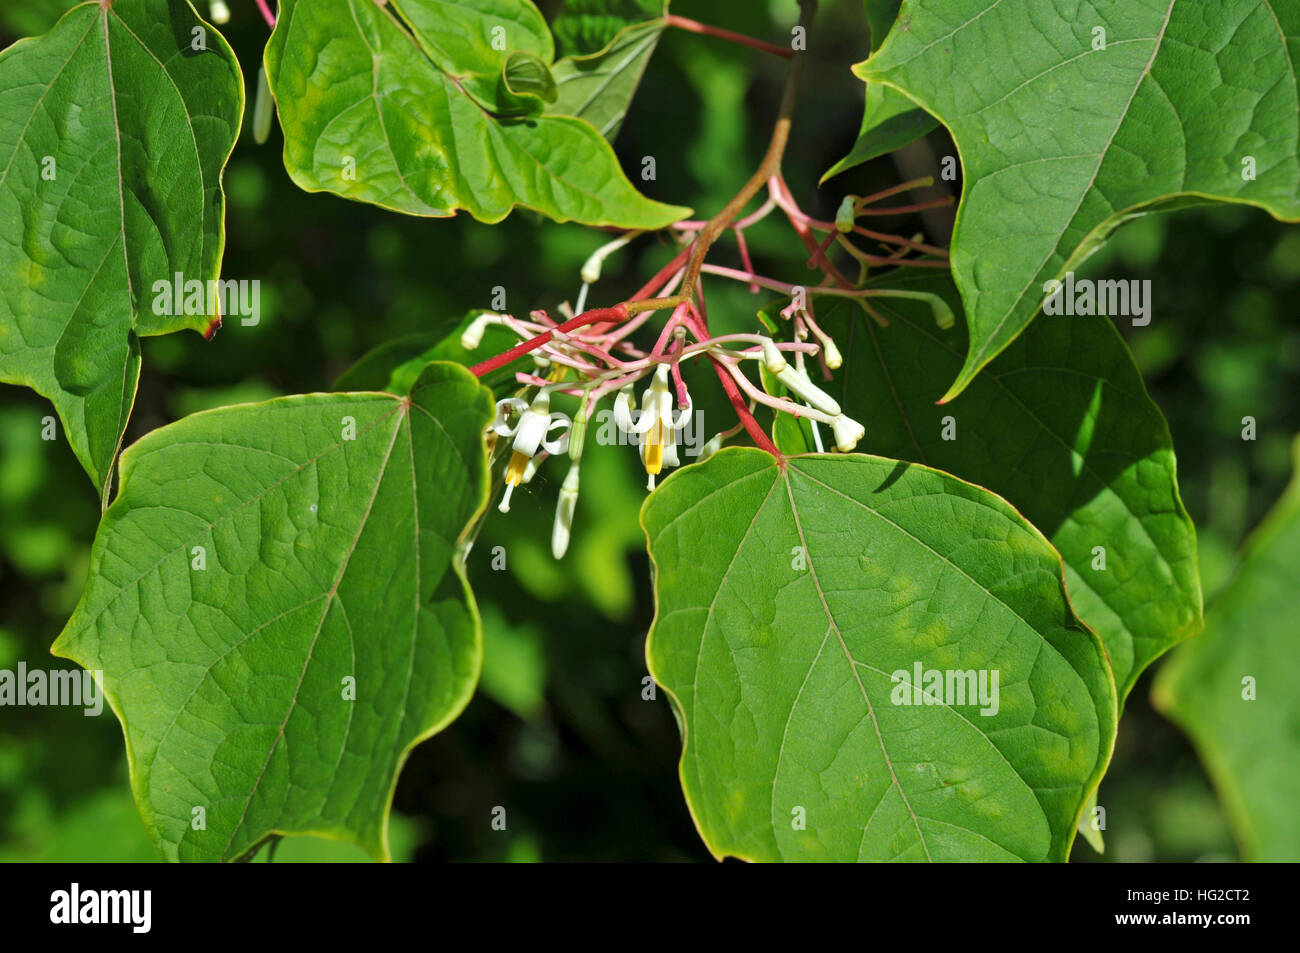 Alangium platanifolium Stock Photo